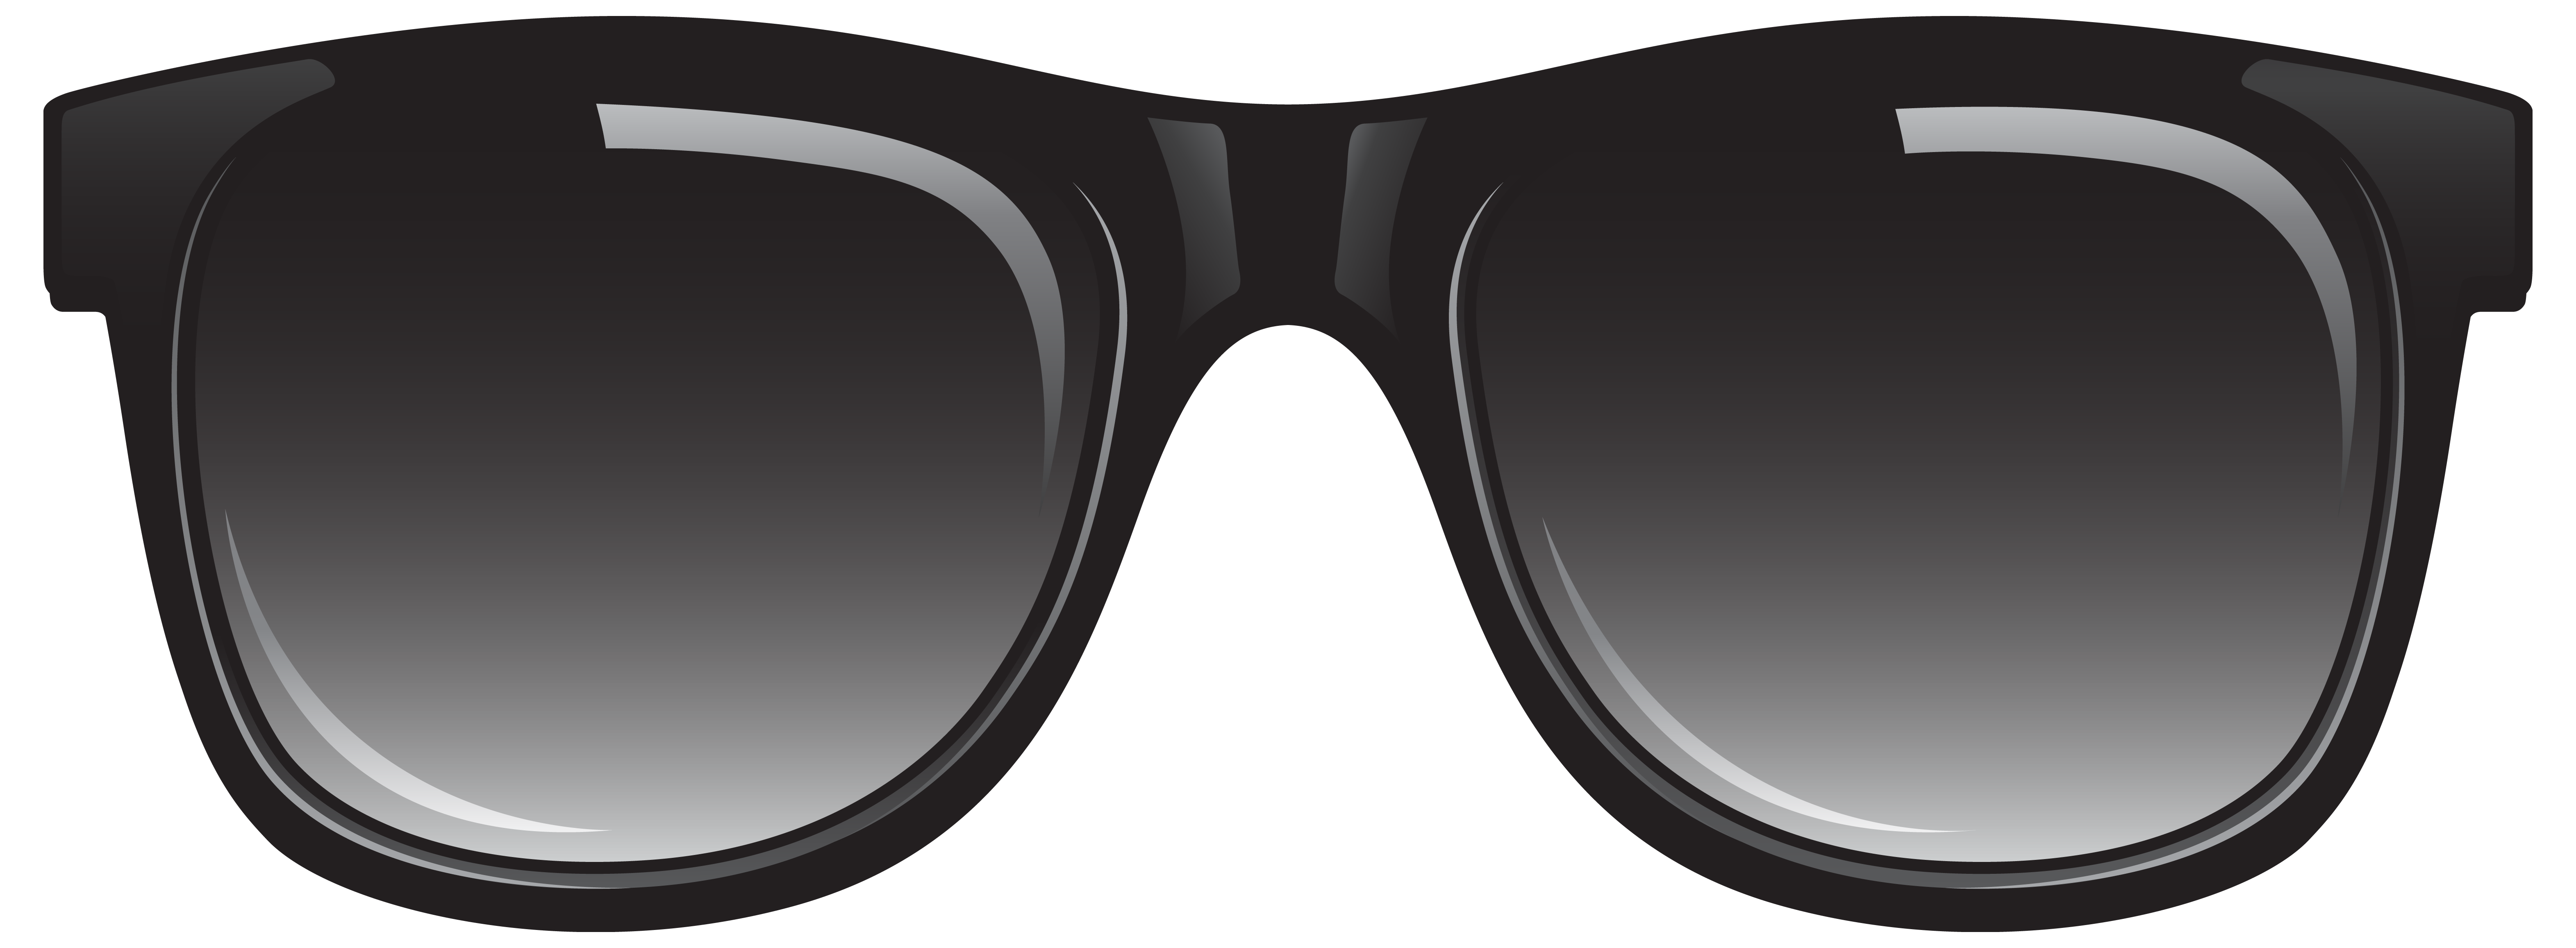 Sunglasses PNG - 22879